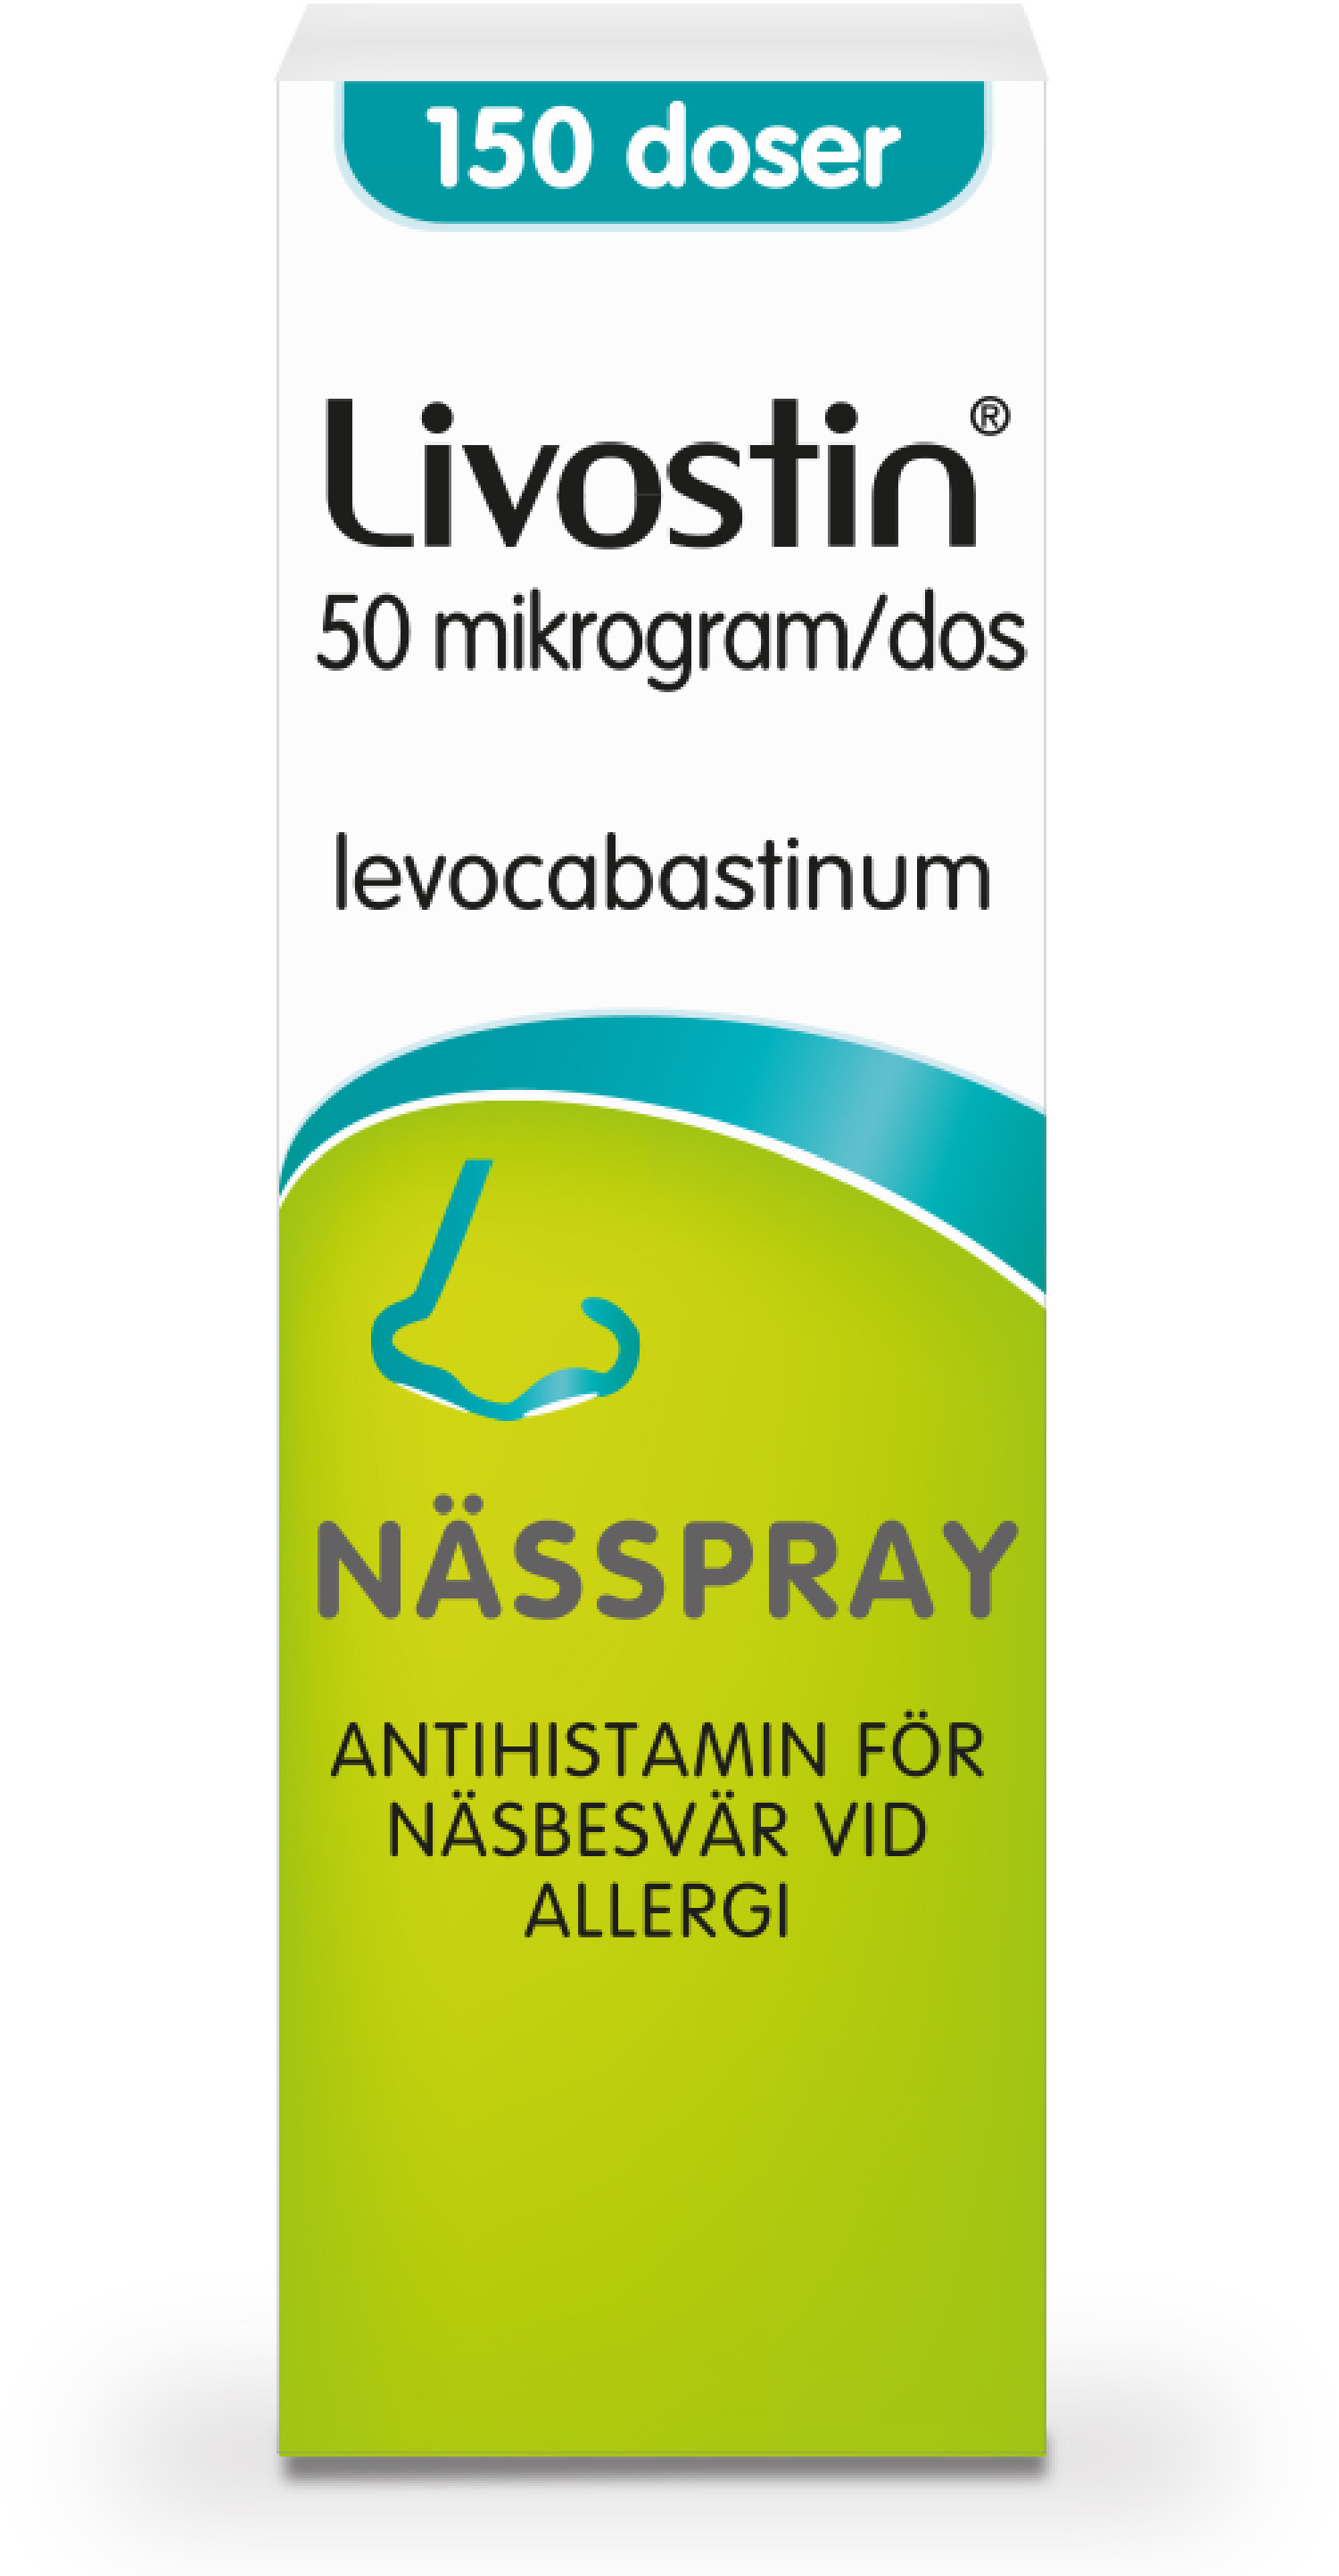 Livostin Nässpray 50 mikrogram/dos, 150 doser